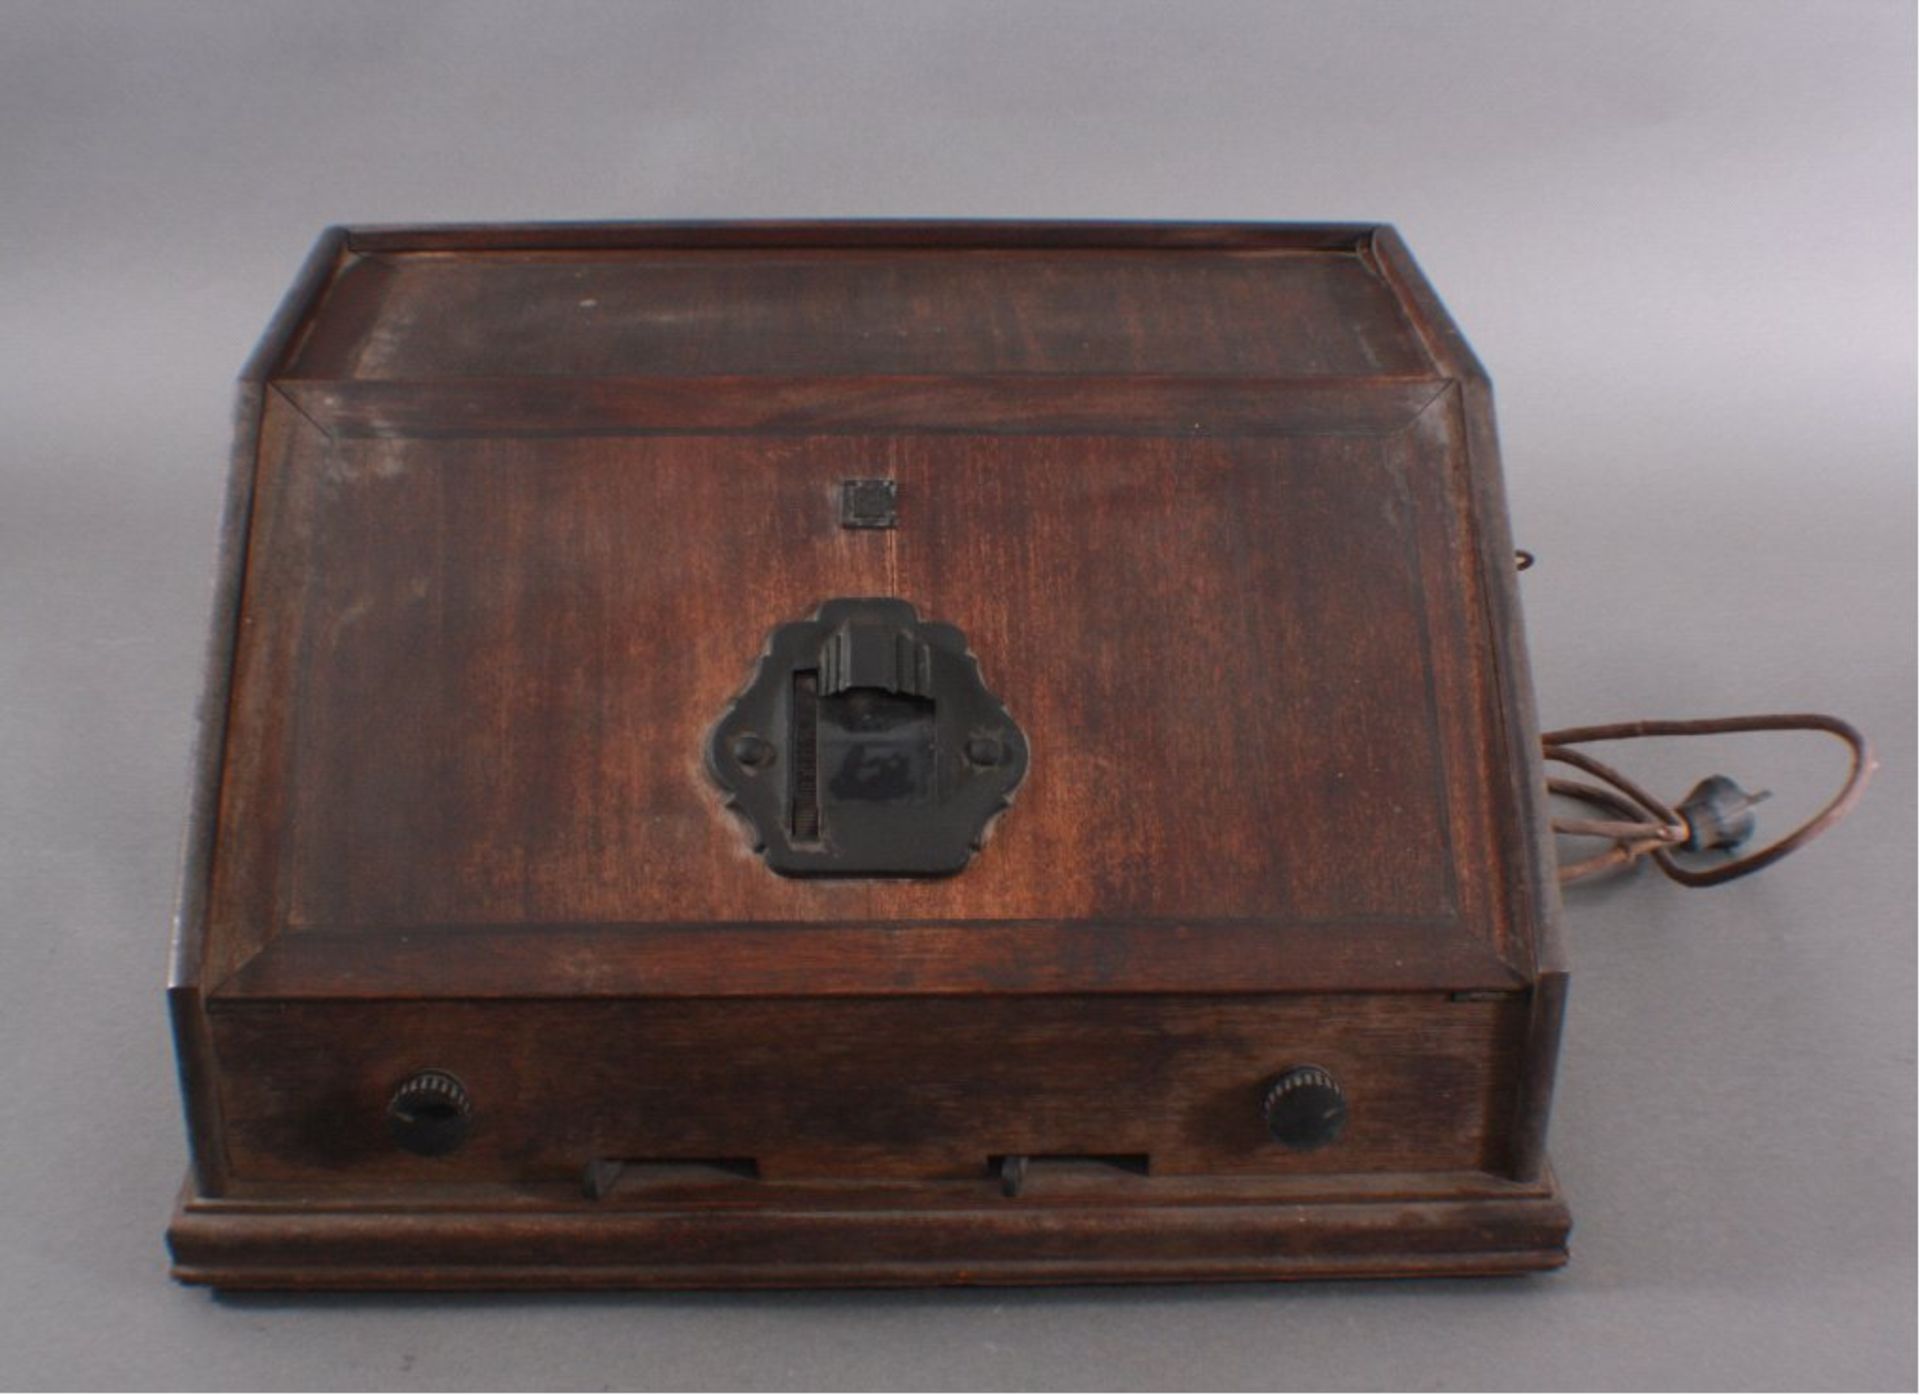 Elektronisches Gerät der Marke Telefunken um 1900Im Holzkasten, auf der Vorderseite mit